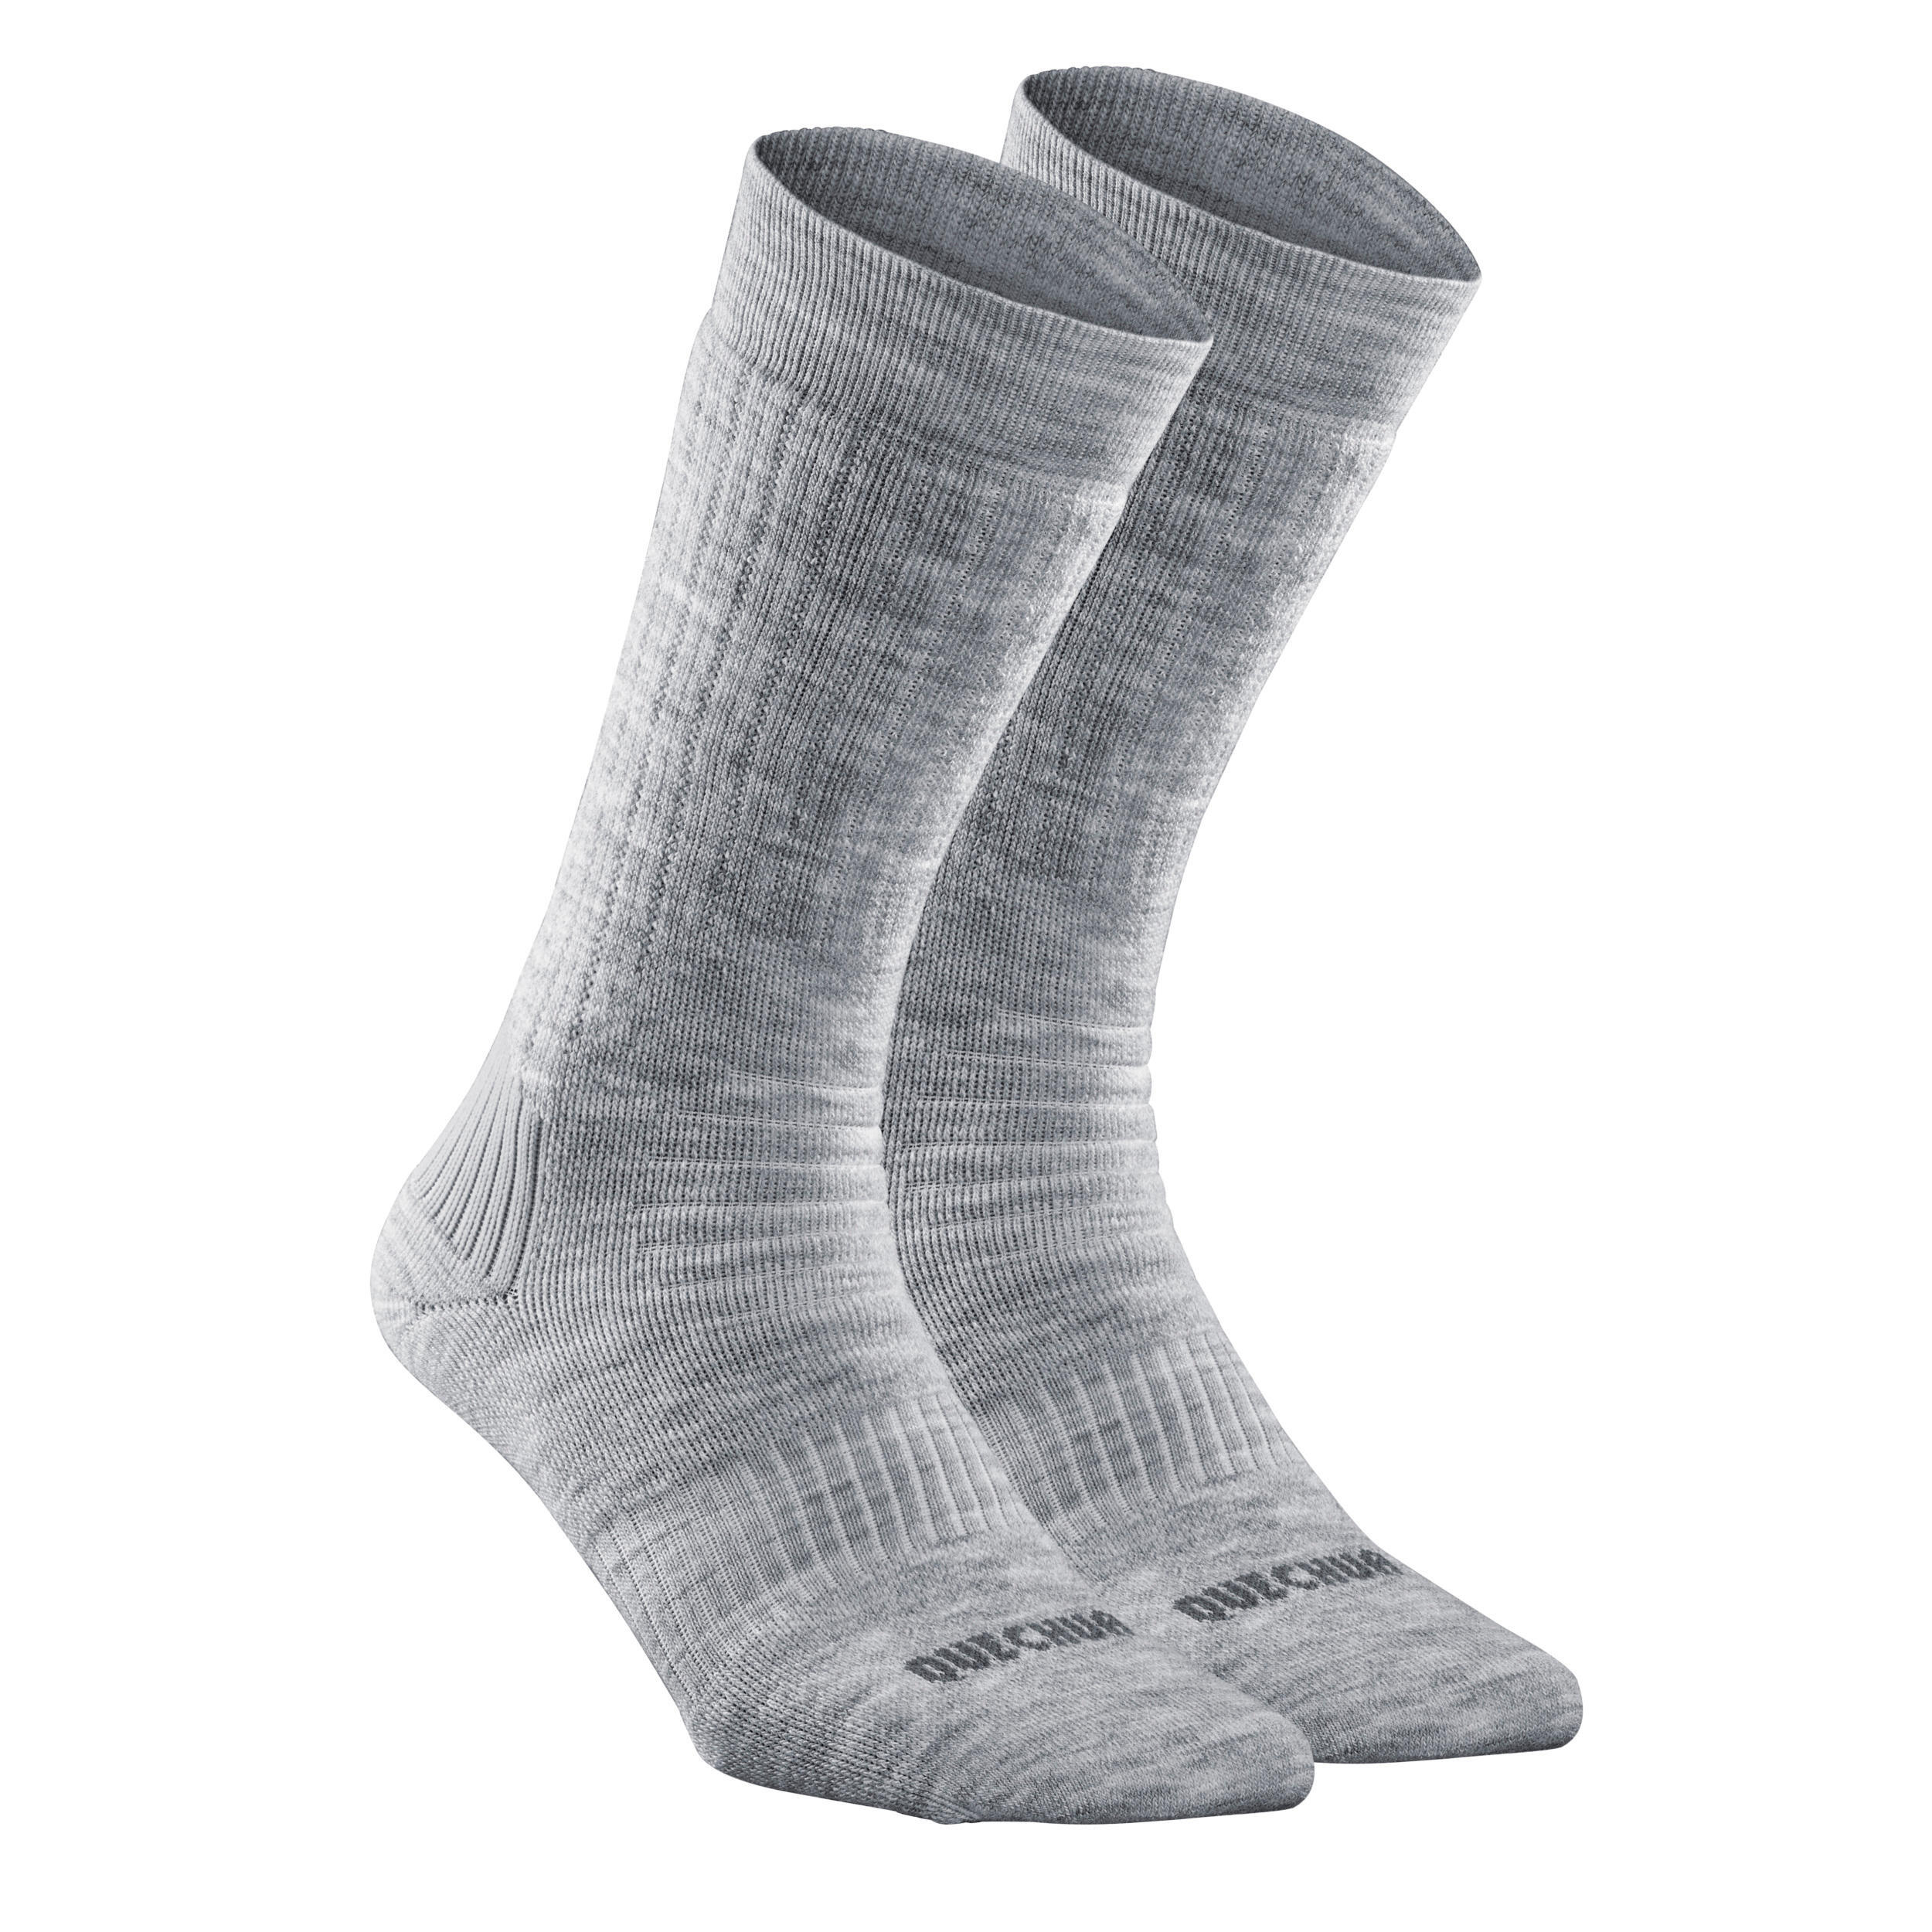 Комплект носков походные теплые Quechua SH100, 2 пары, серый походные носки теплые высокие 2 пары зимние походные sh100 quechua цвет schwarz